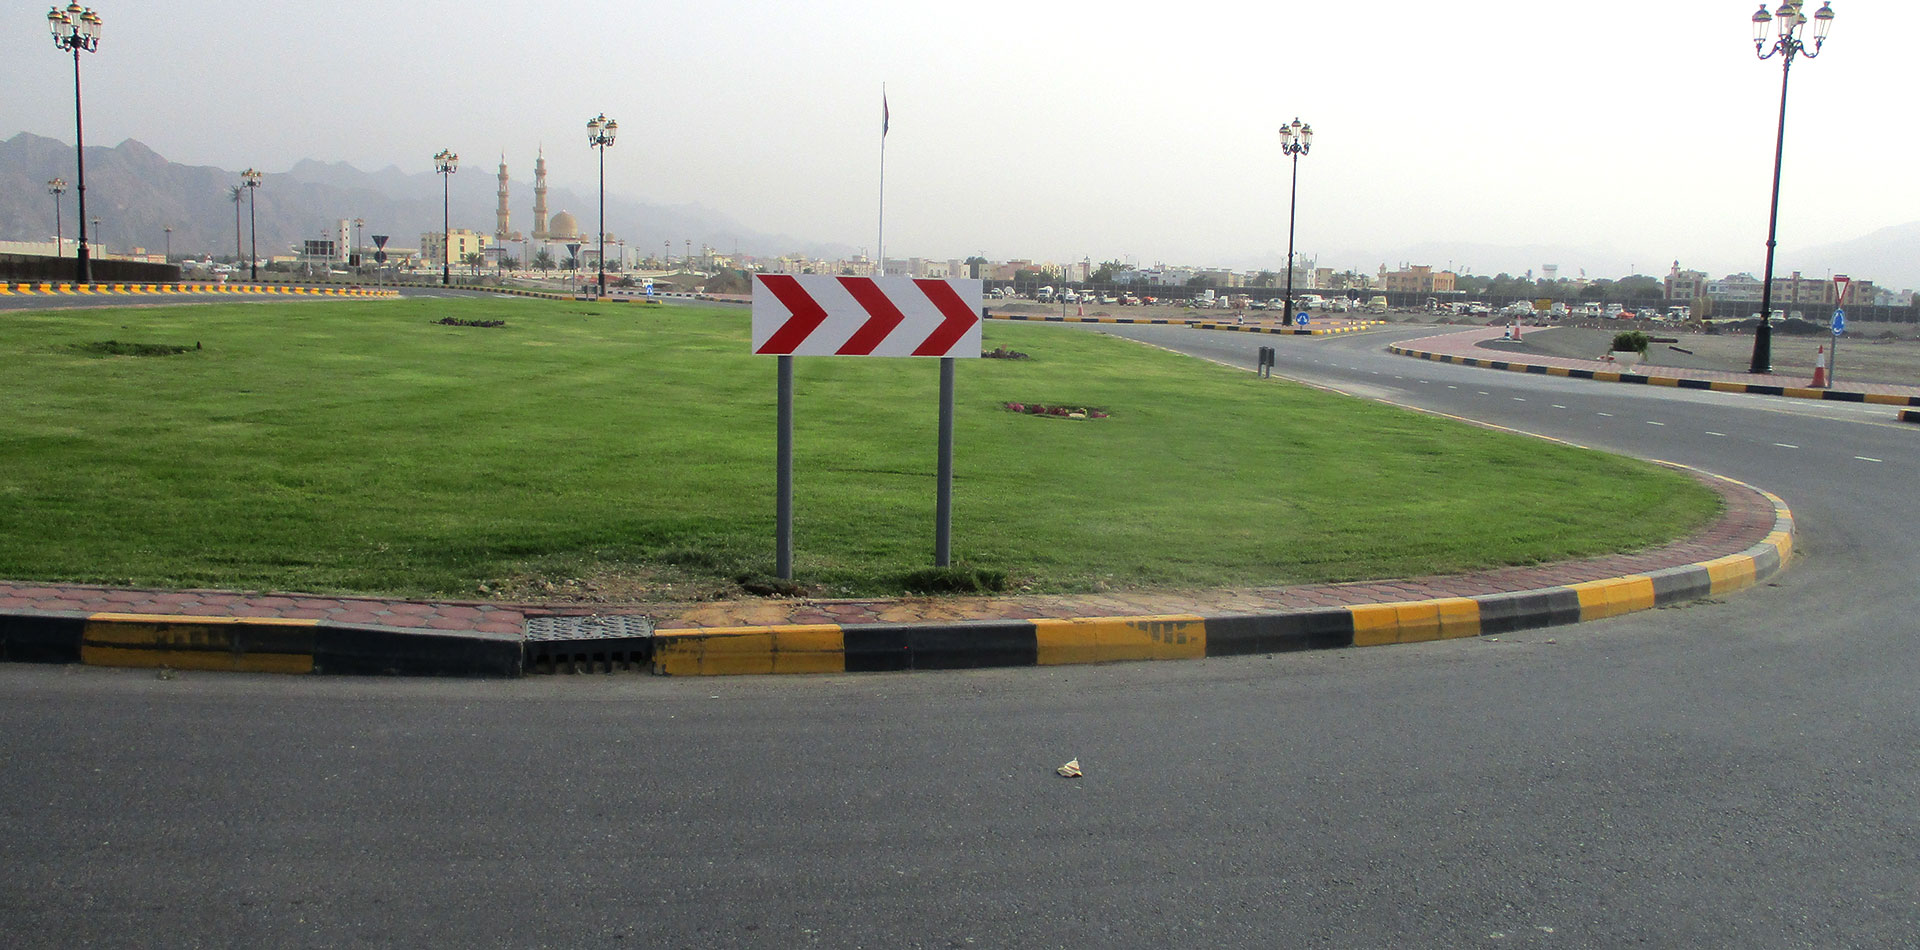 Warning Signage showing direction